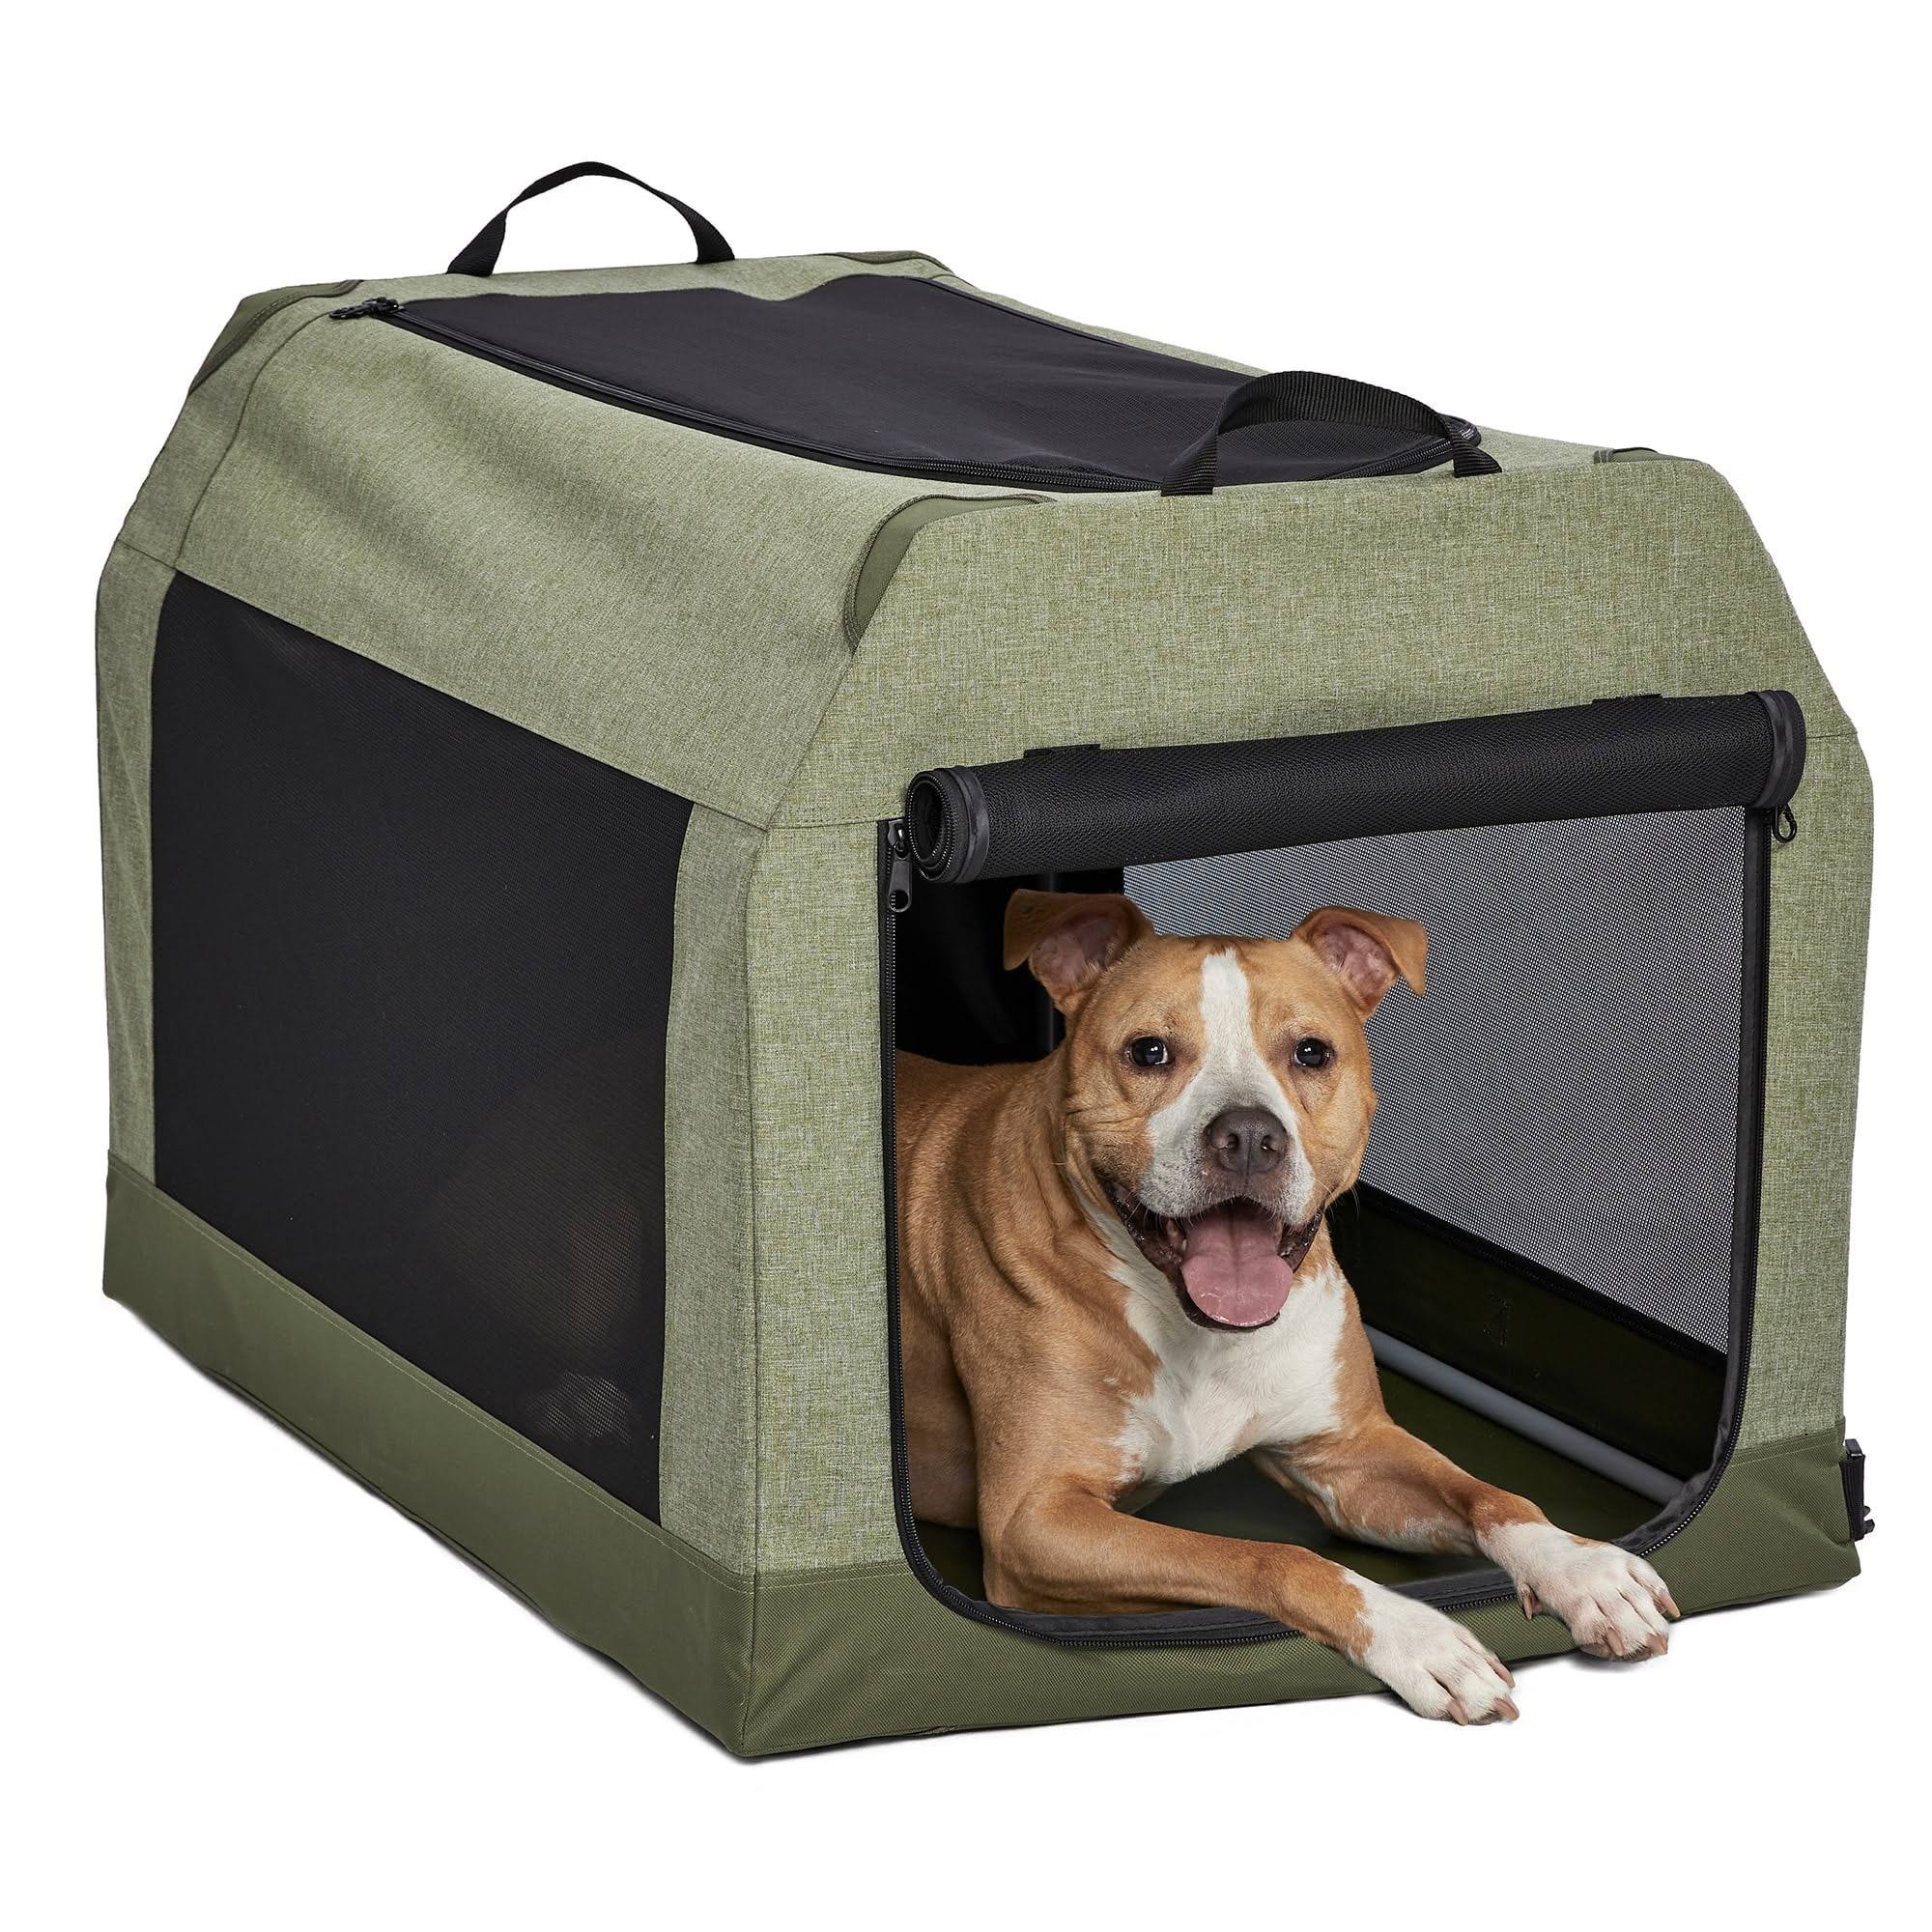 Midwest Canine Camper Dog Tent Crate, Green, Intermediate